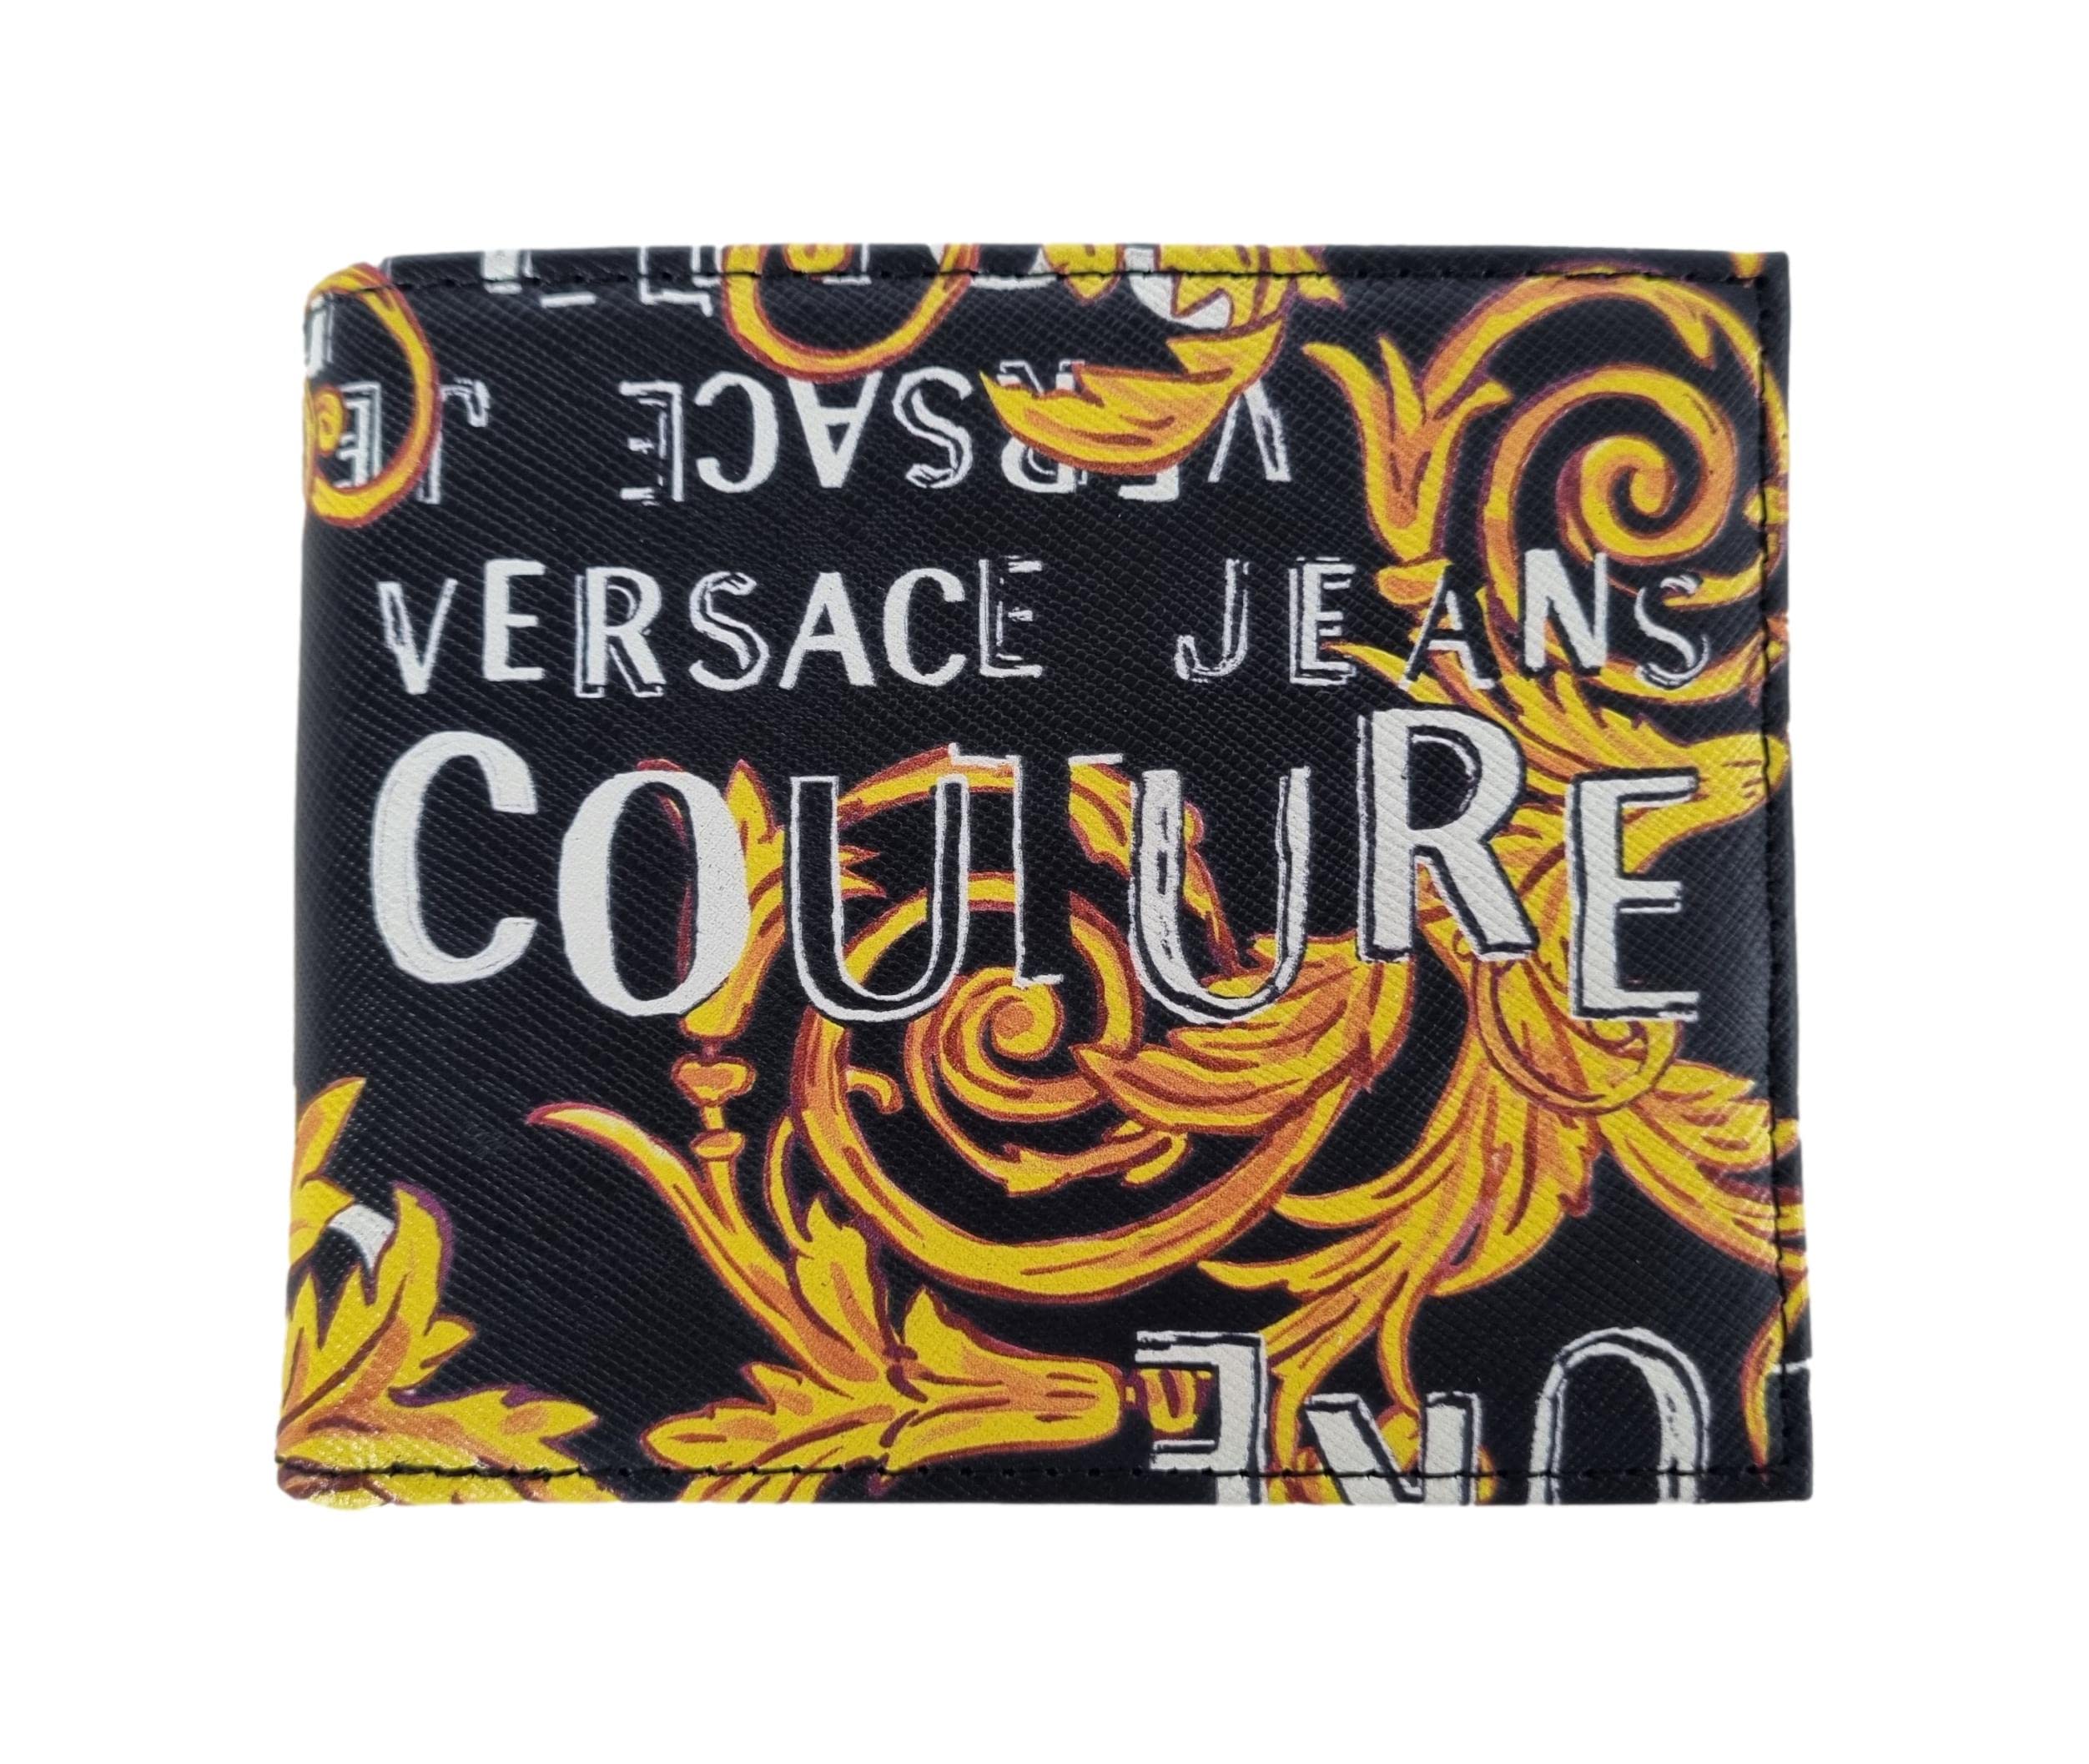 Mua Versace Jeans Couture men Logo couture wallet black - gold trên ...